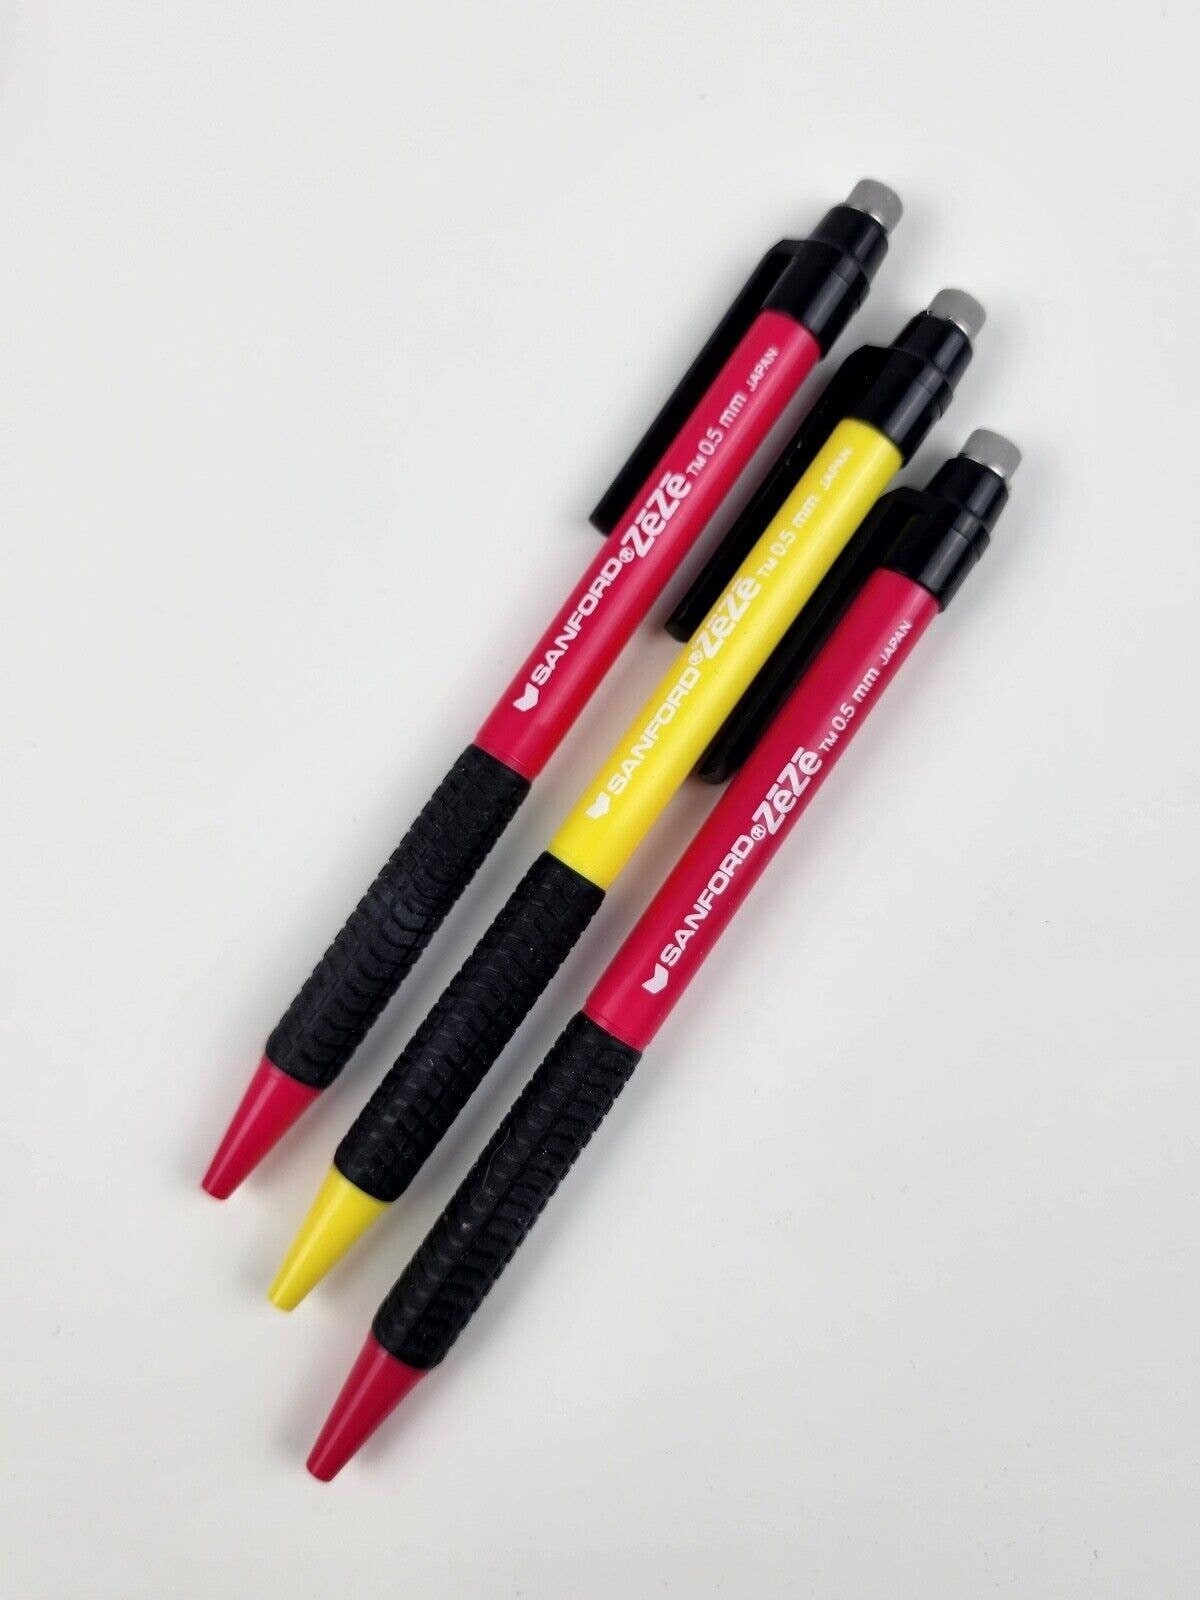 Prismacolor Design Multi-pack Art Erasers by Sanford. Includes